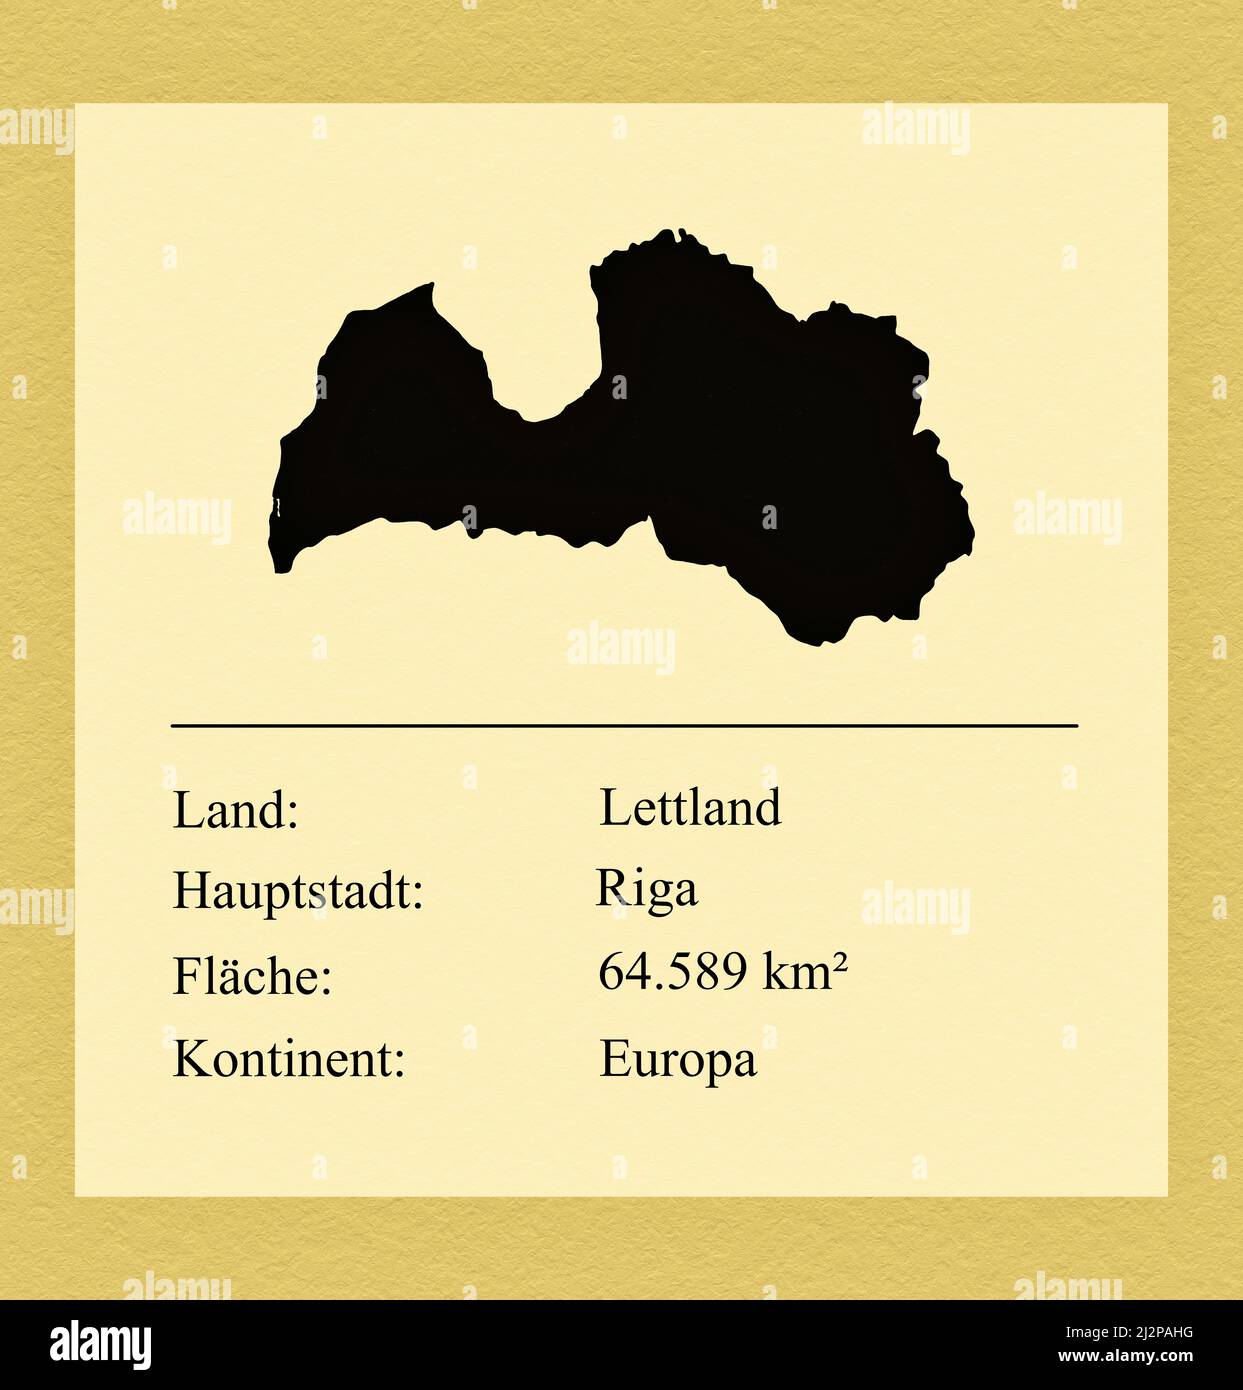 Umrisse des Landes Lettland, darunter ein kleiner Steckbrief mit Ländernamen, Hauptstadt, Fläche und Kontinent Stock Photo